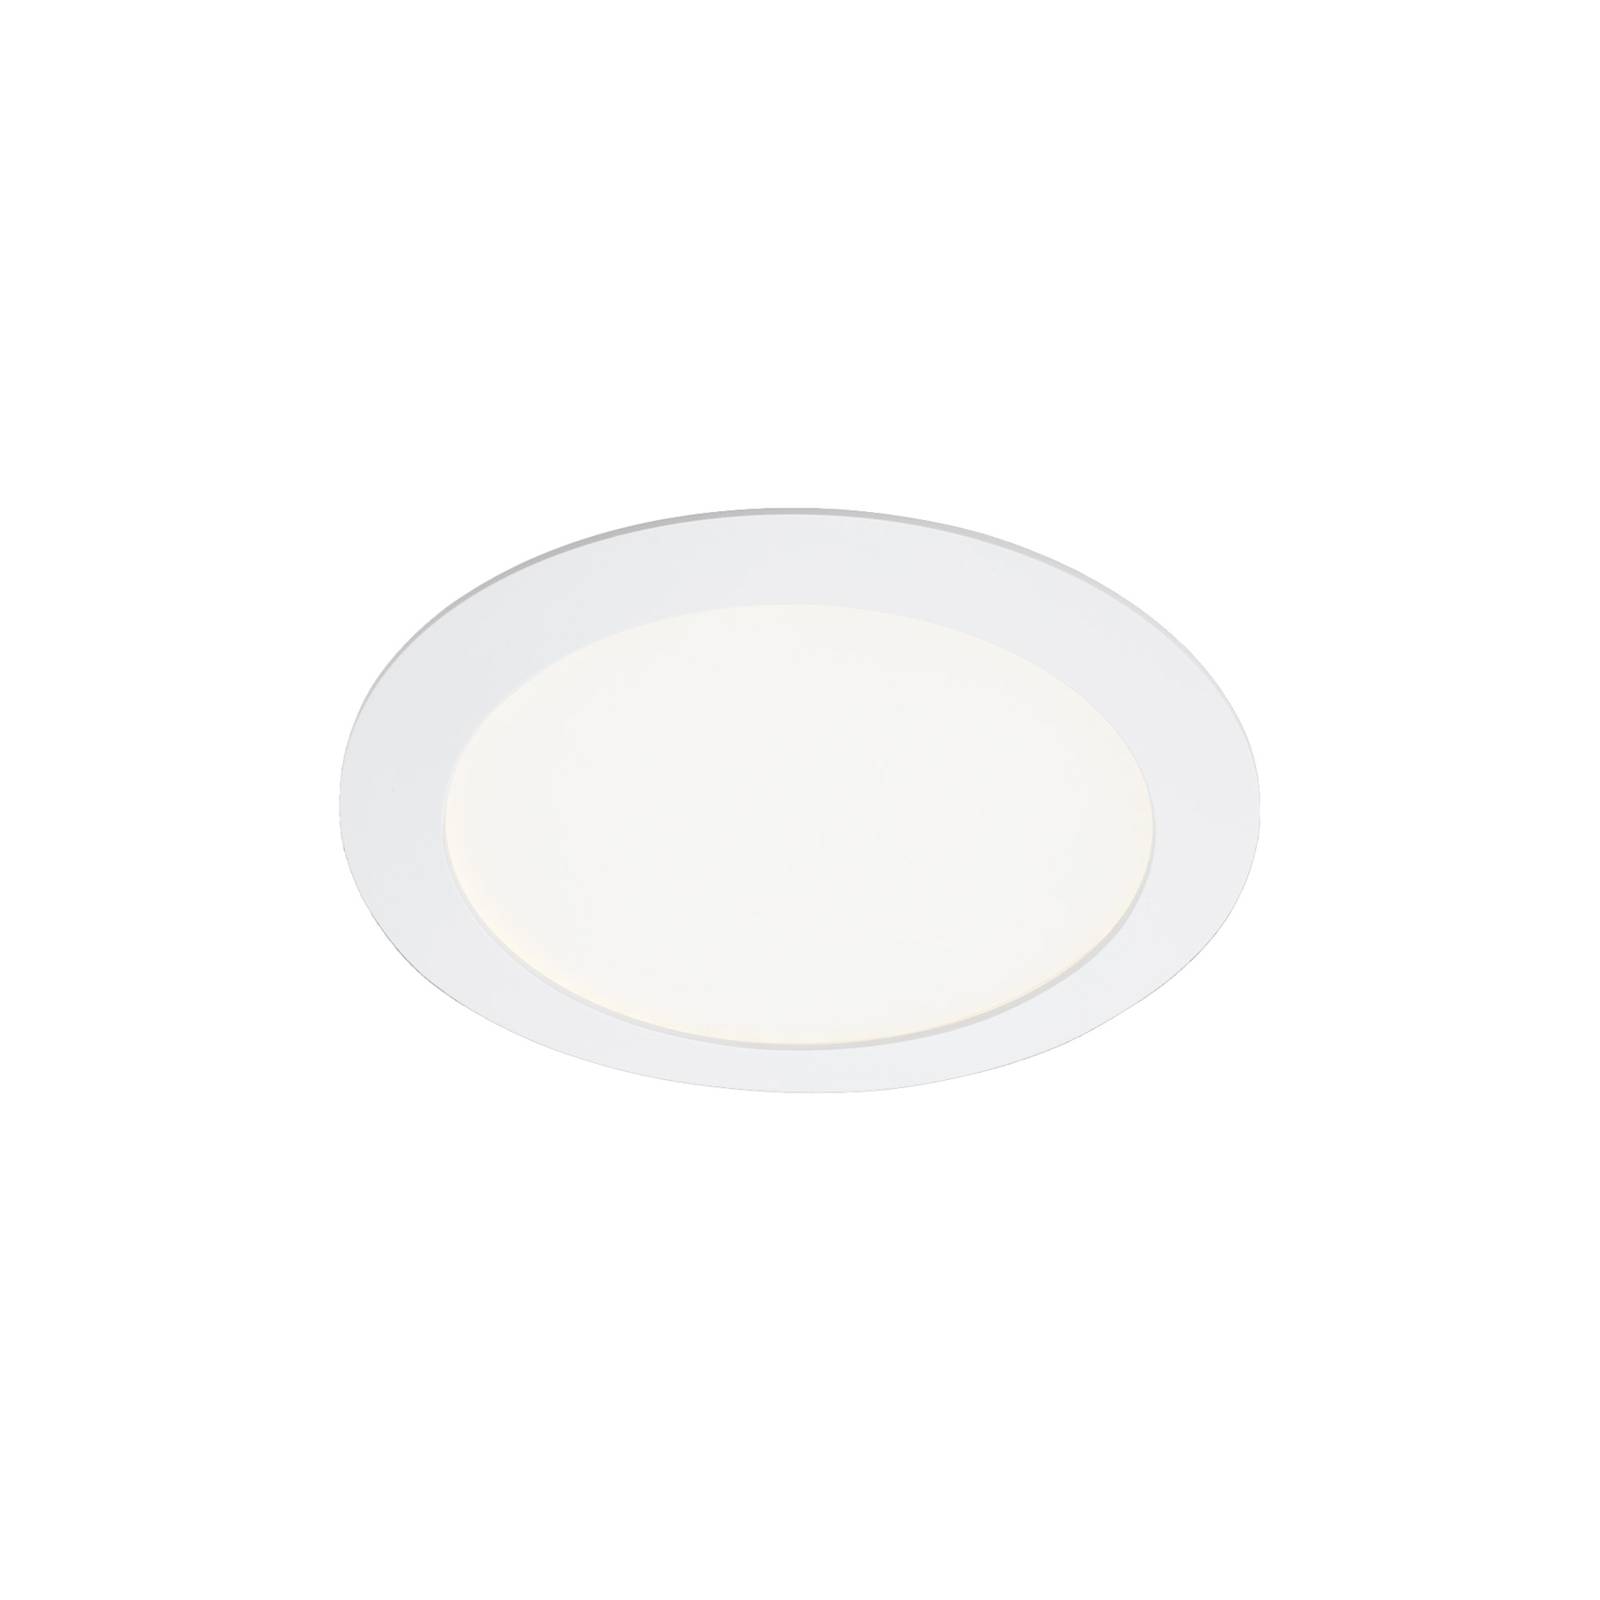 Telefunken LED-Einbauleuchte Virgo, RGBW, weiß, Ø 17 cm